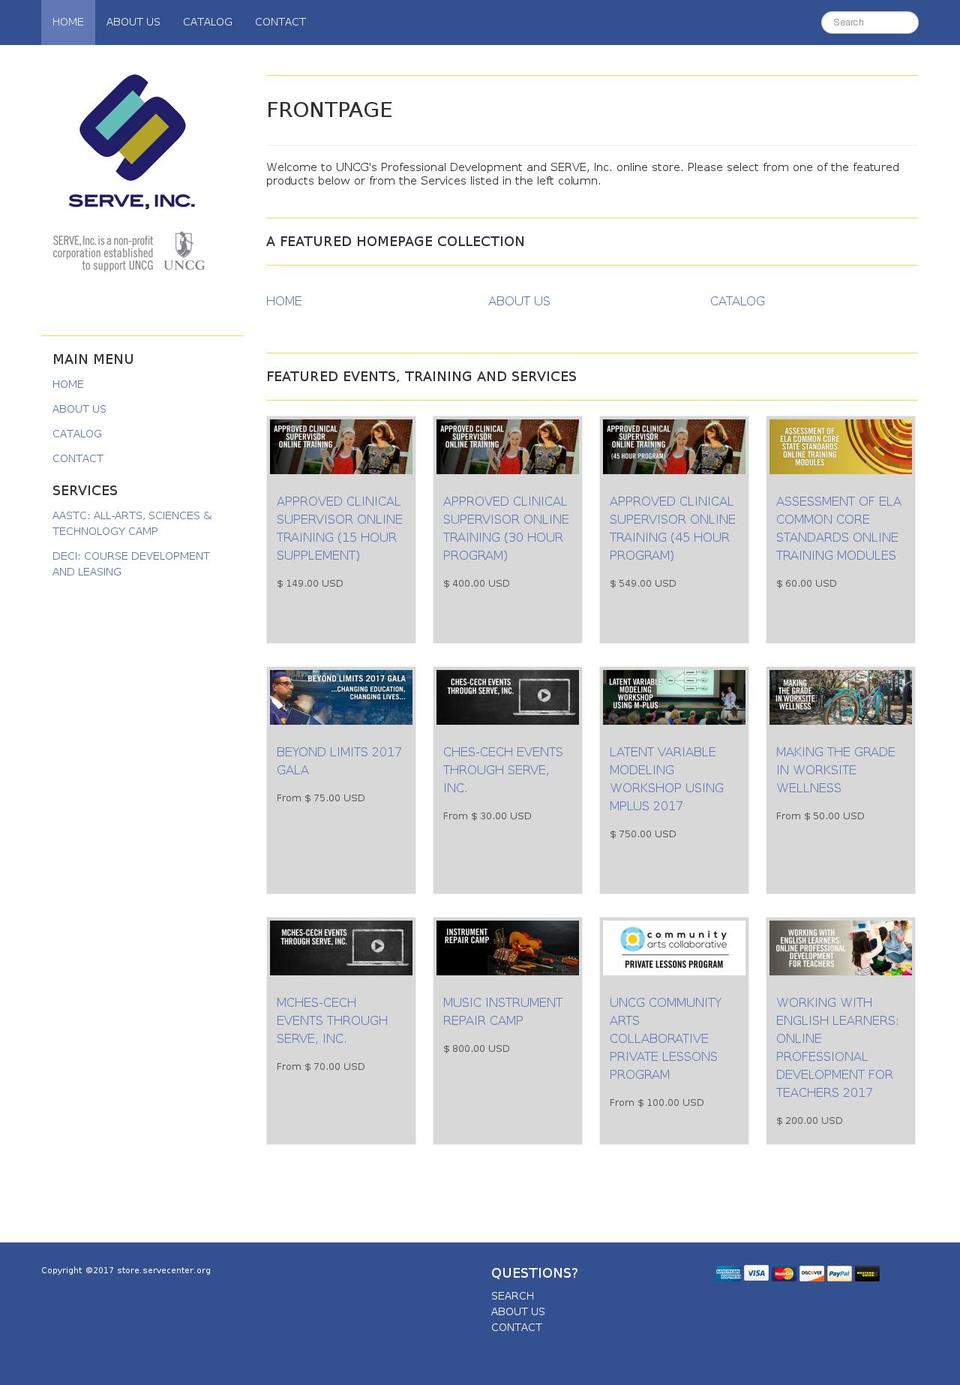 servecenter.org shopify website screenshot